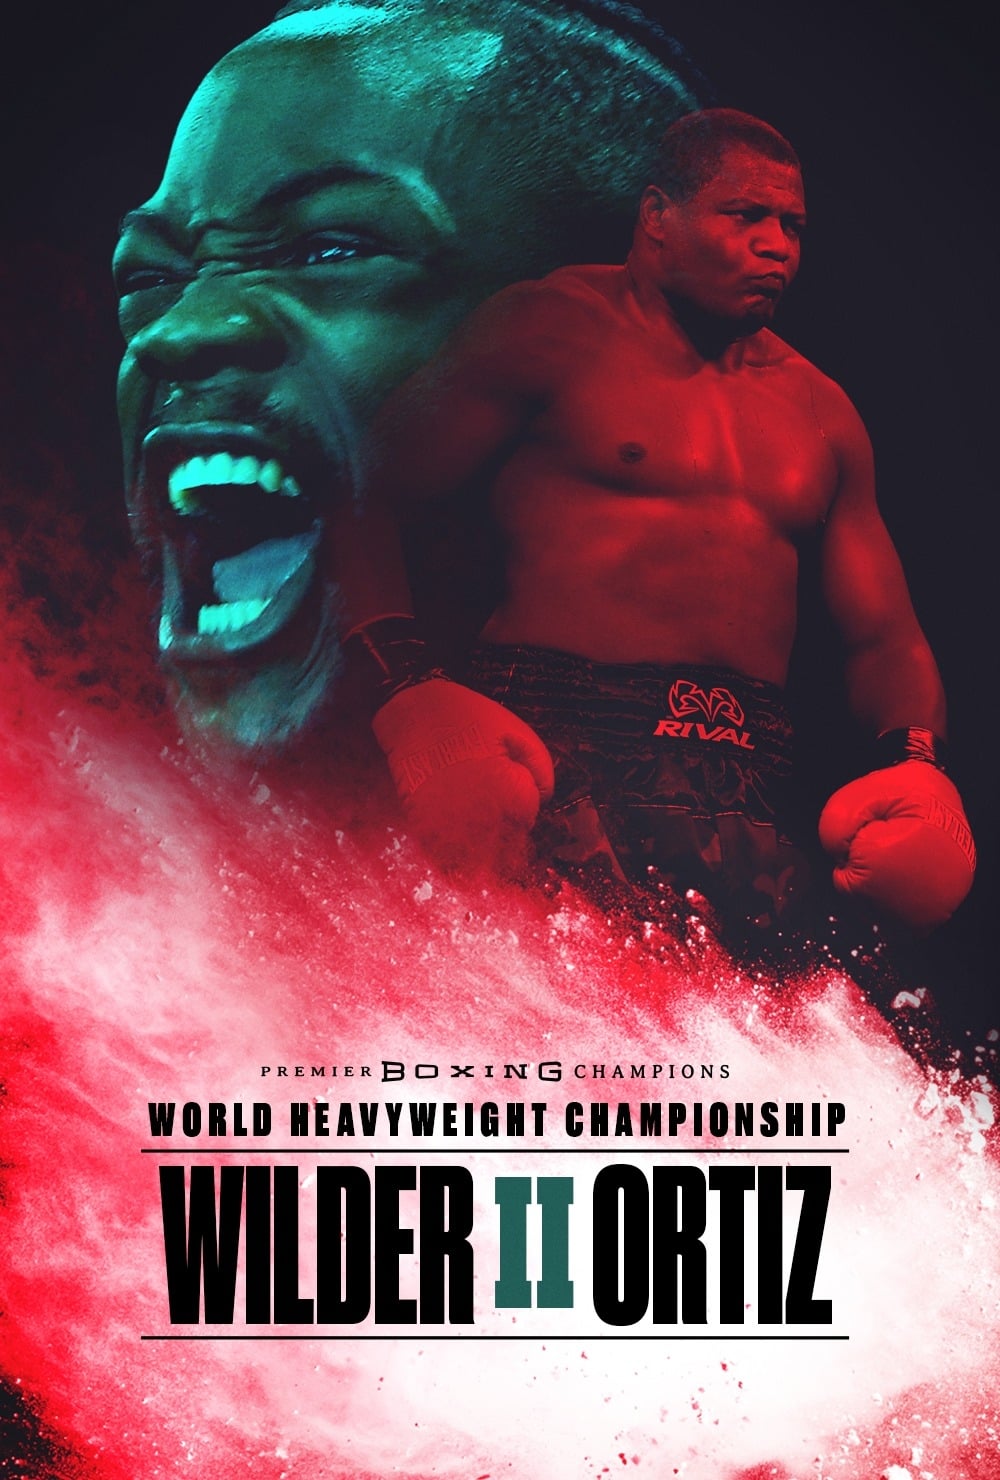 Deontay Wilder vs. Luis Ortiz II